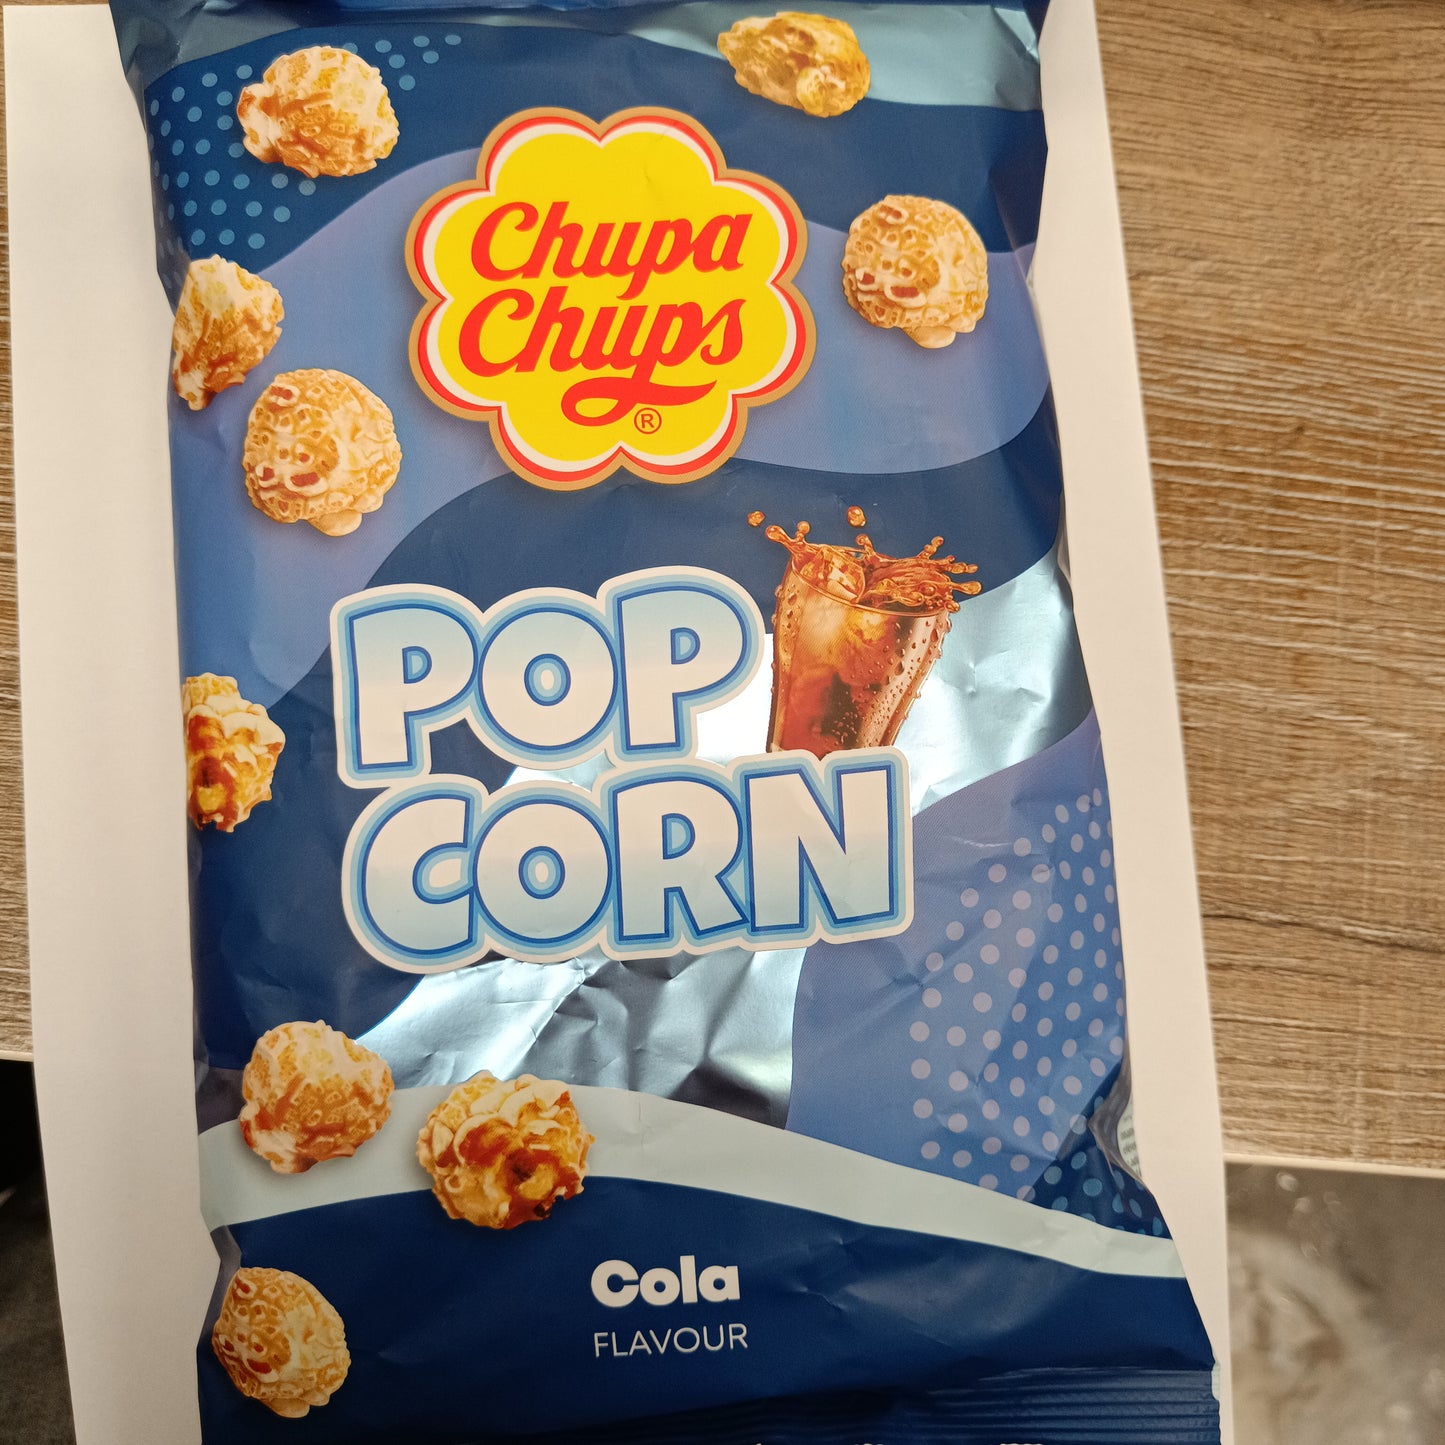 Chupa chups Pop corn Cola 110g